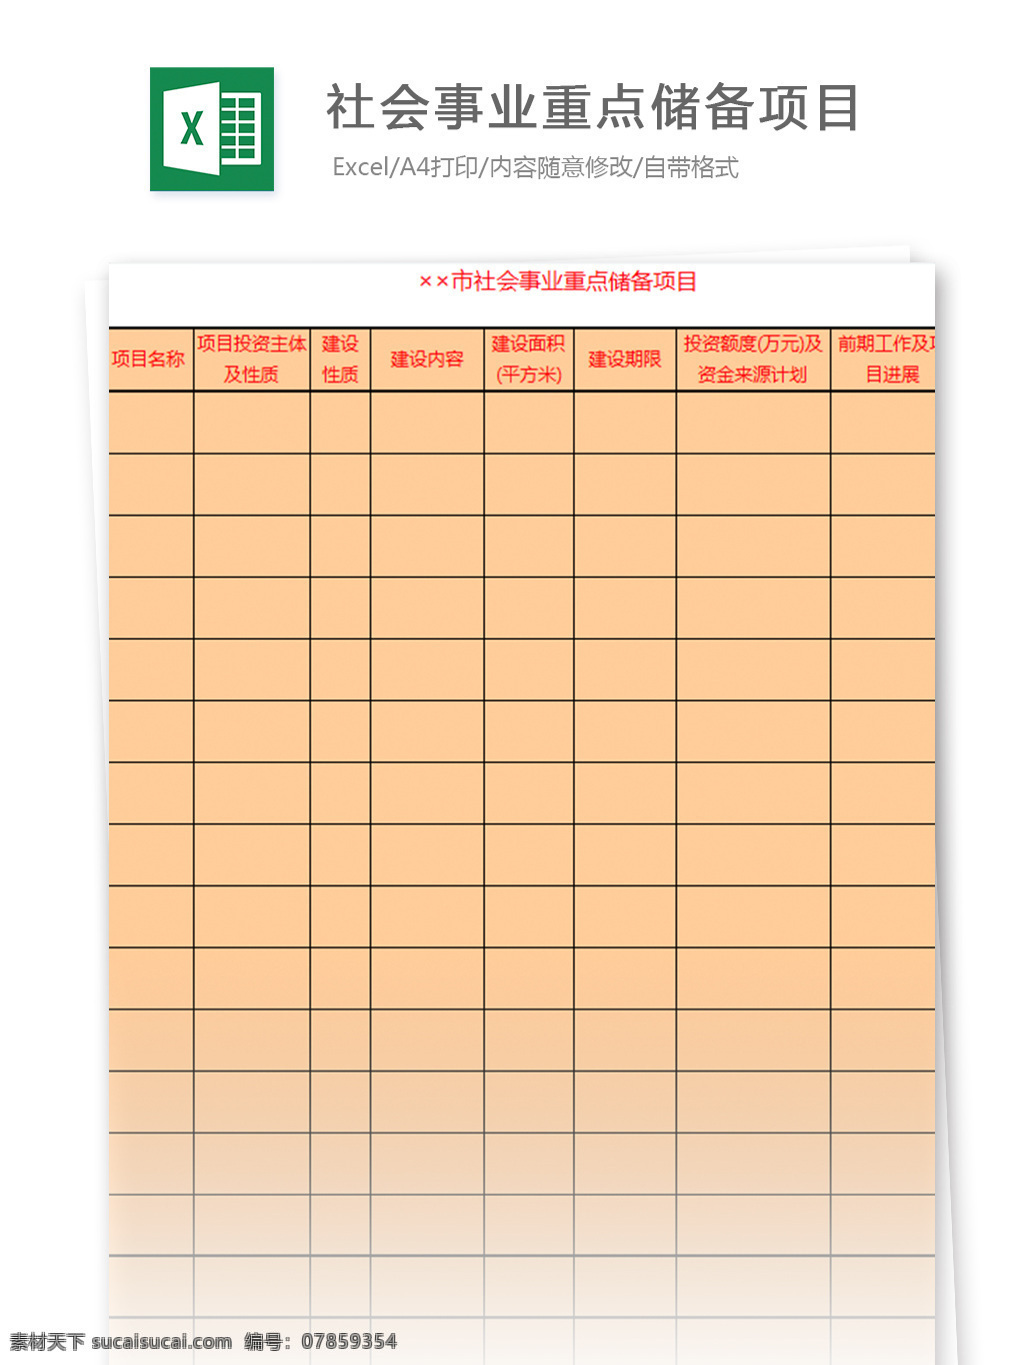 社会事业 重点 储备 项目 表格 表格模板 图表 表格设计 项目明细 人力资源